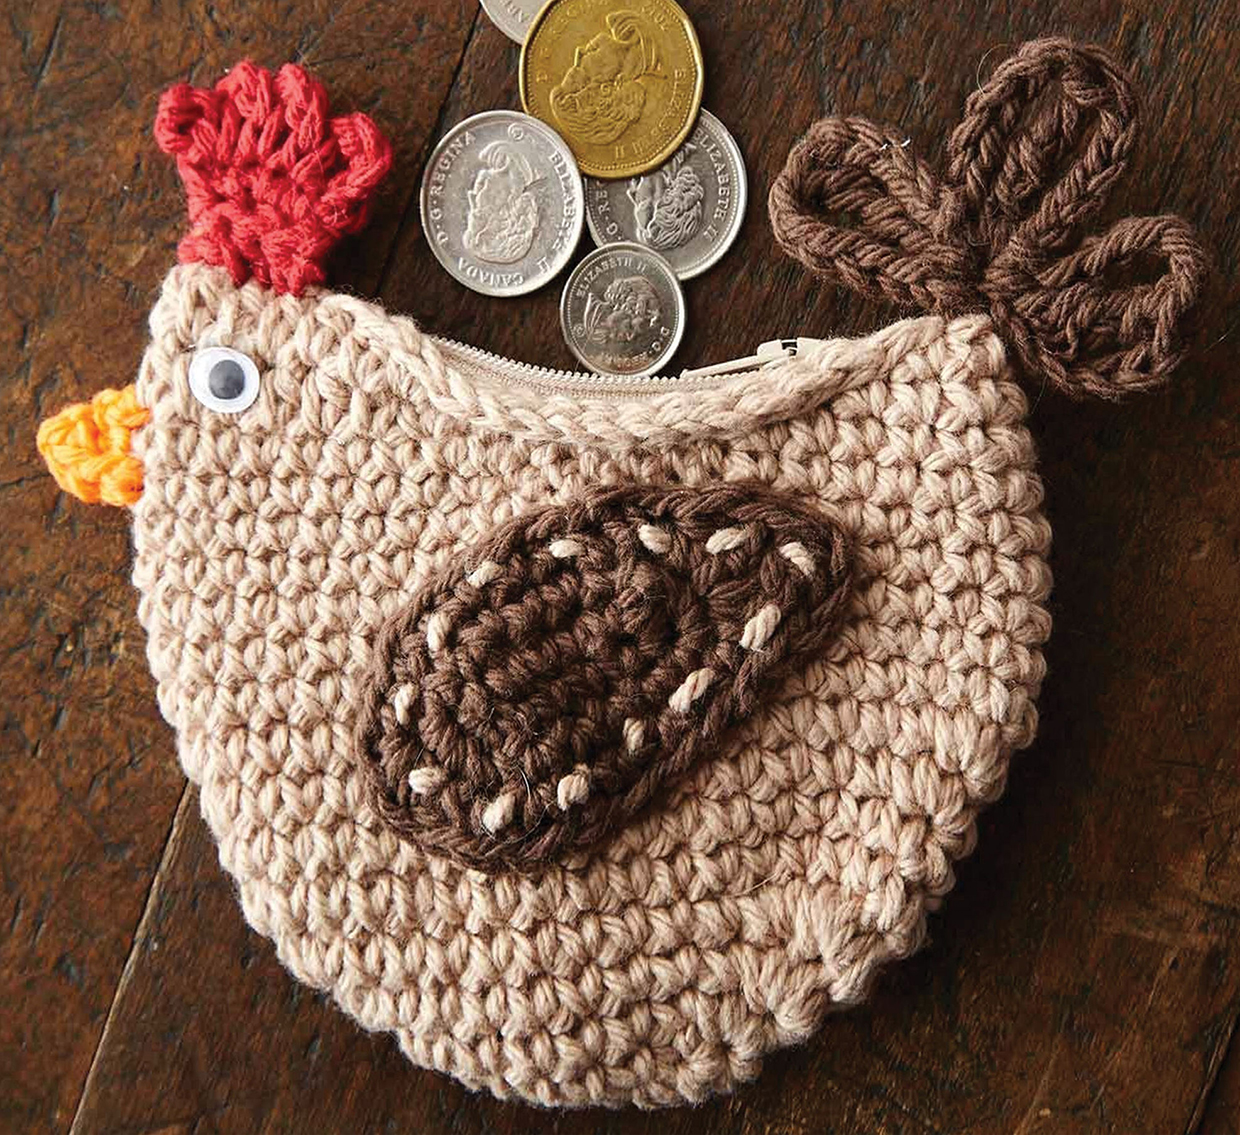 Crochet Kids Purse – The Yarn Bowl Crochet